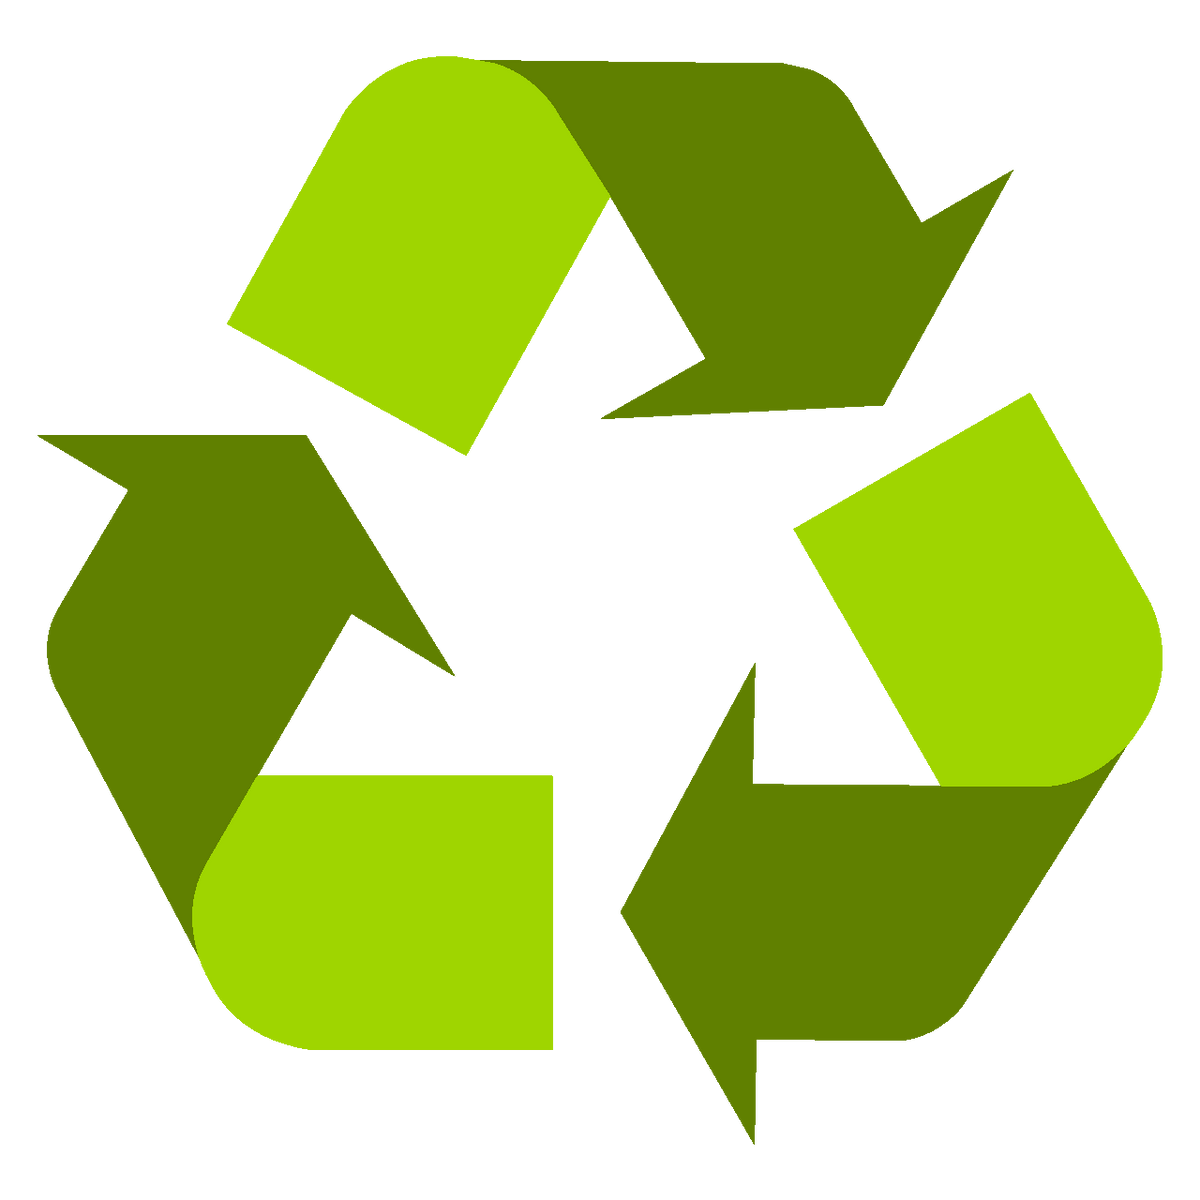 Recycling von alten Möbeln und gebrauchten Produkten